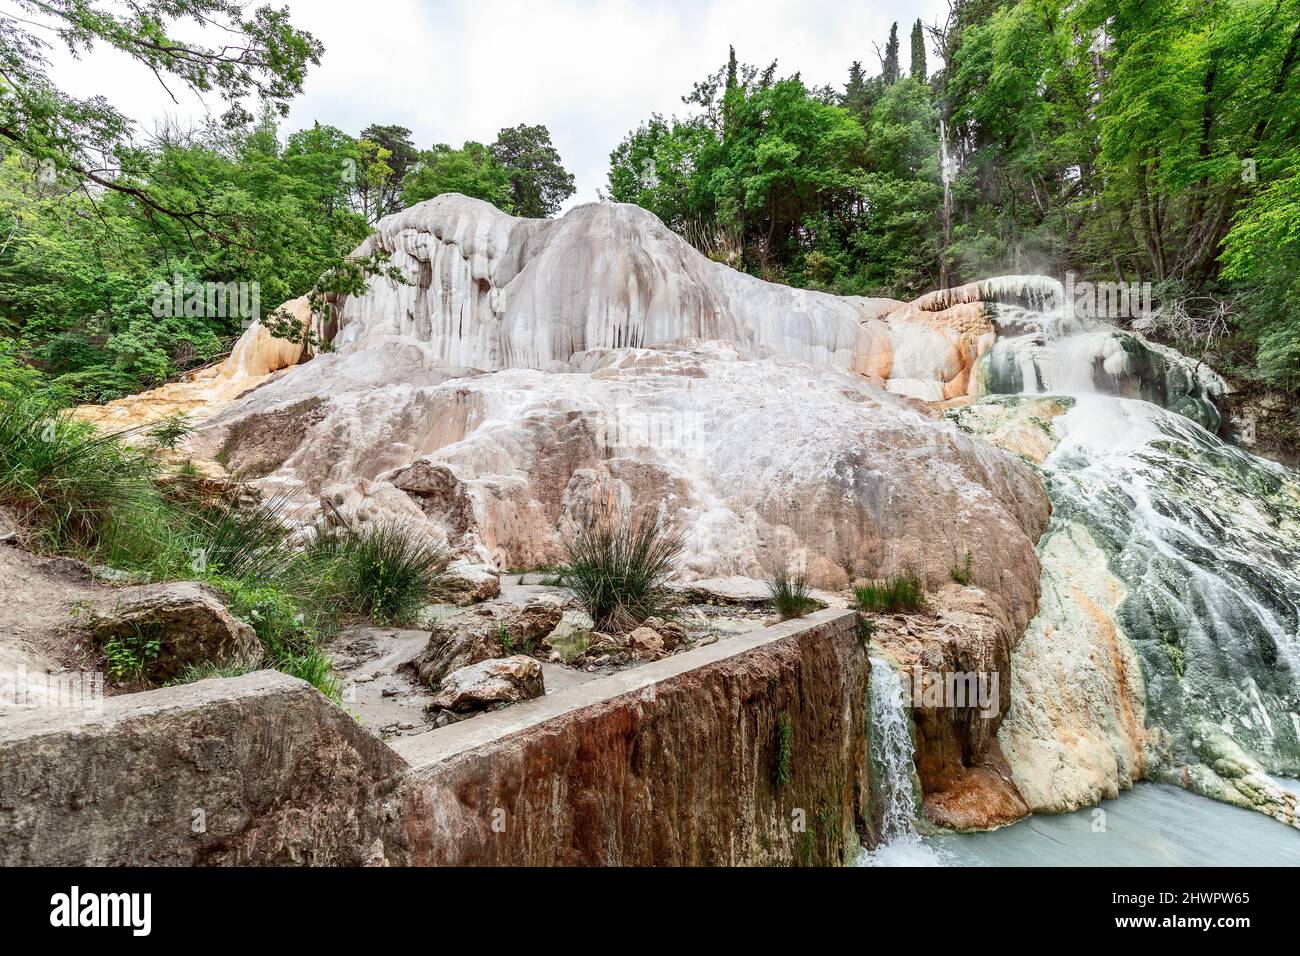 Ein mit Kalzium angereichertes Mineralwasser erzeugt einen Wasserfall auf den Felsen (La Balena Bianca) in Bagni San Filippo. Toskana, Italien Stockfoto